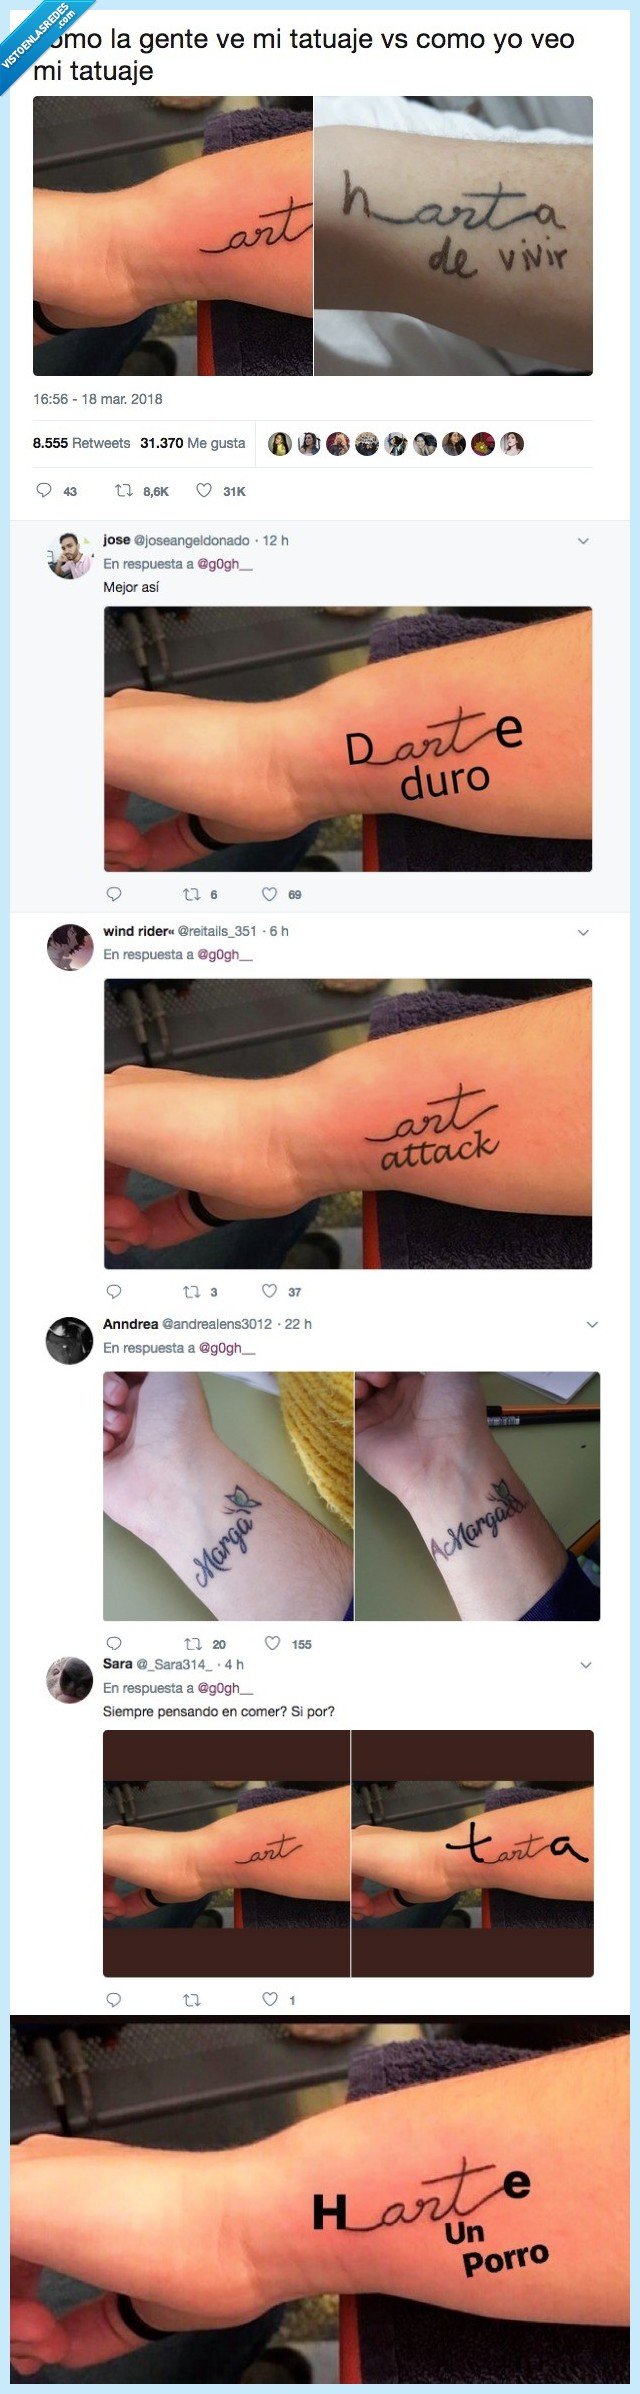 484876 - Le trollean el tatuaje por twitter y hay resultados muy guapos, por @https://twitter.com/g0gh__/status/975521354198986754